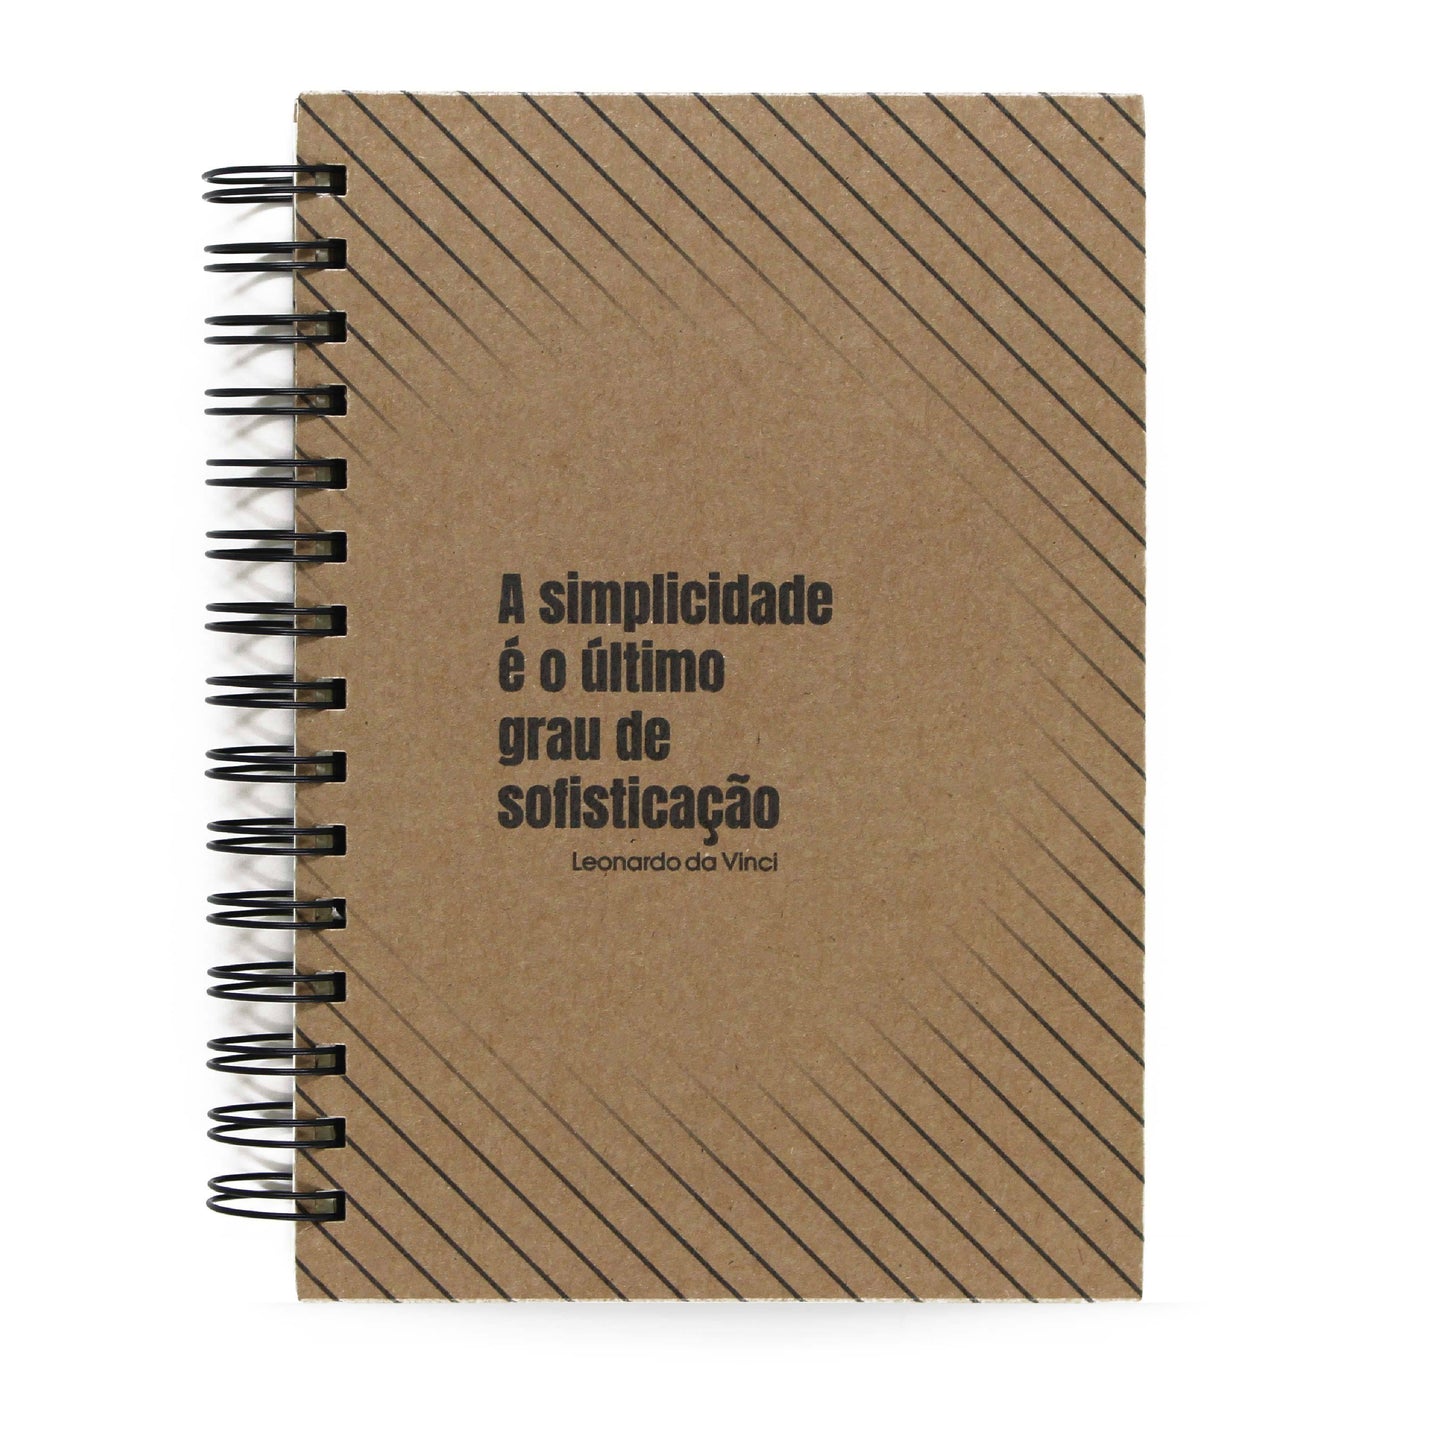 Caderno Leonardo Da Vinci "Simplicidade" Capa Dura 125 Fls 90g A5